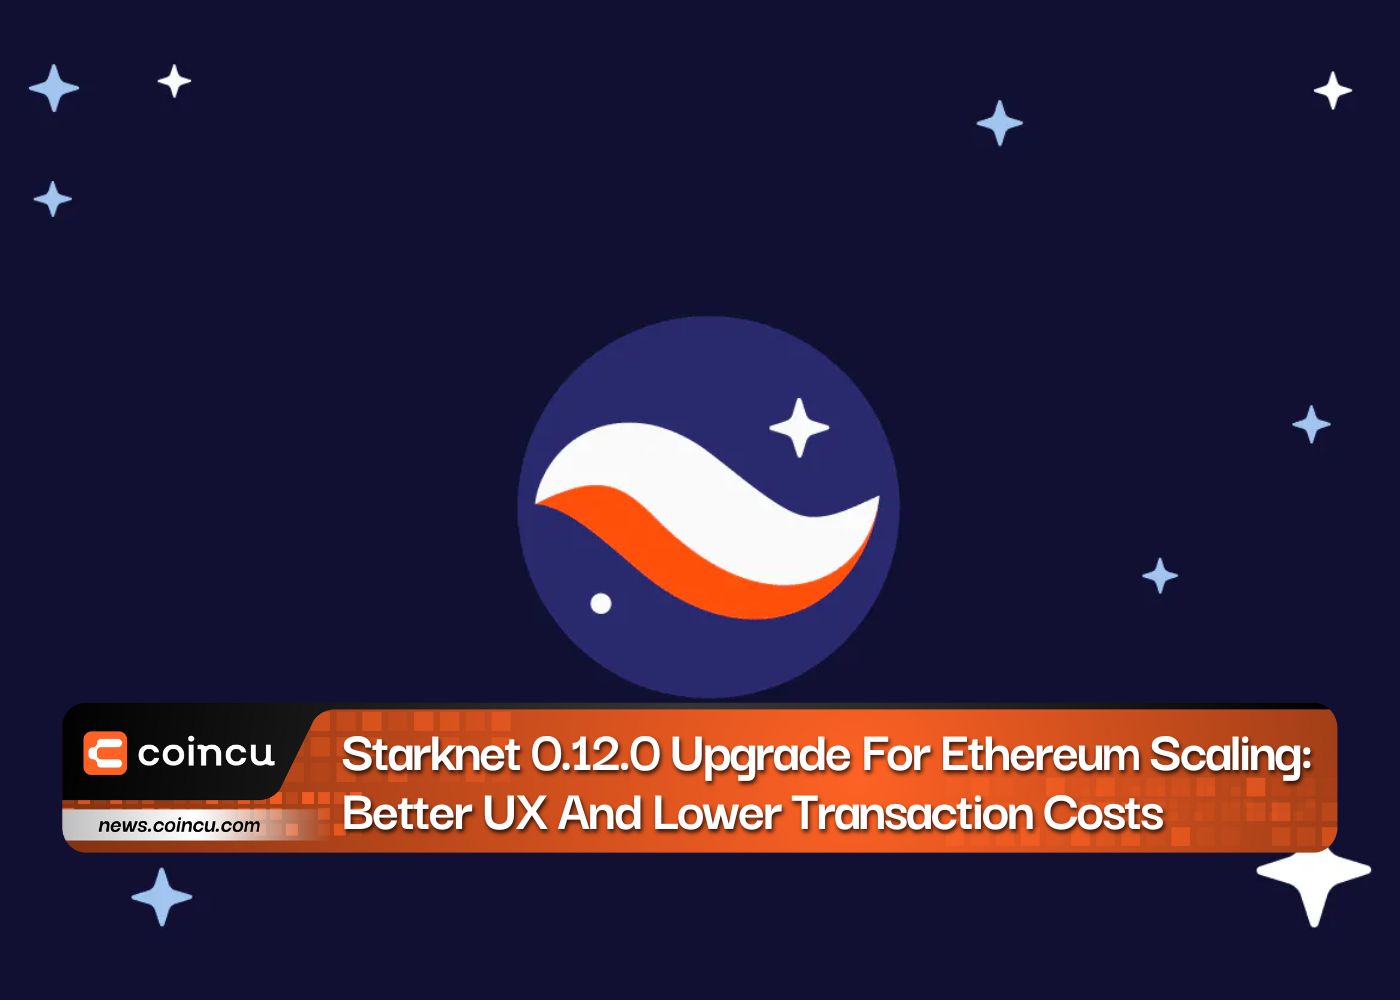 Nâng cấp Starknet 0.12.0 để mở rộng quy mô Ethereum: Trải nghiệm người dùng tốt hơn và chi phí giao dịch thấp hơn